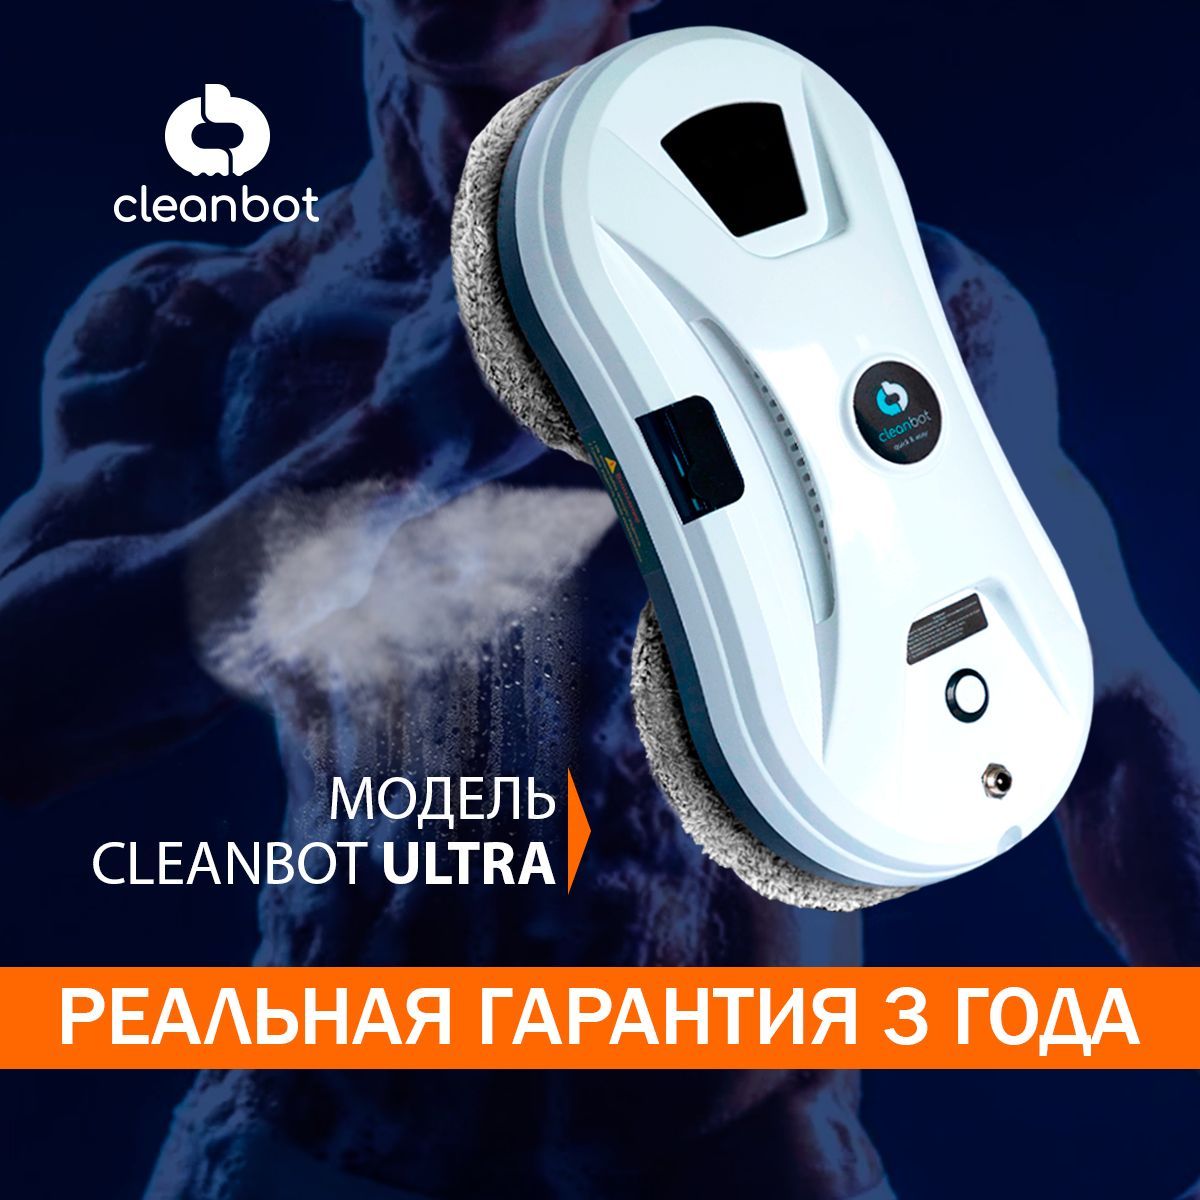 Мойщик окон cleanbot ultraspray купить. Робот мойщик окон Cleanbot ULTRASPRAY. Робот для мойки окон Cleanbot ULTRASPRAY. Cleanbot ULTRASPRAY цены. Робот-мойщик окон Cleanbot Pro инструкция.